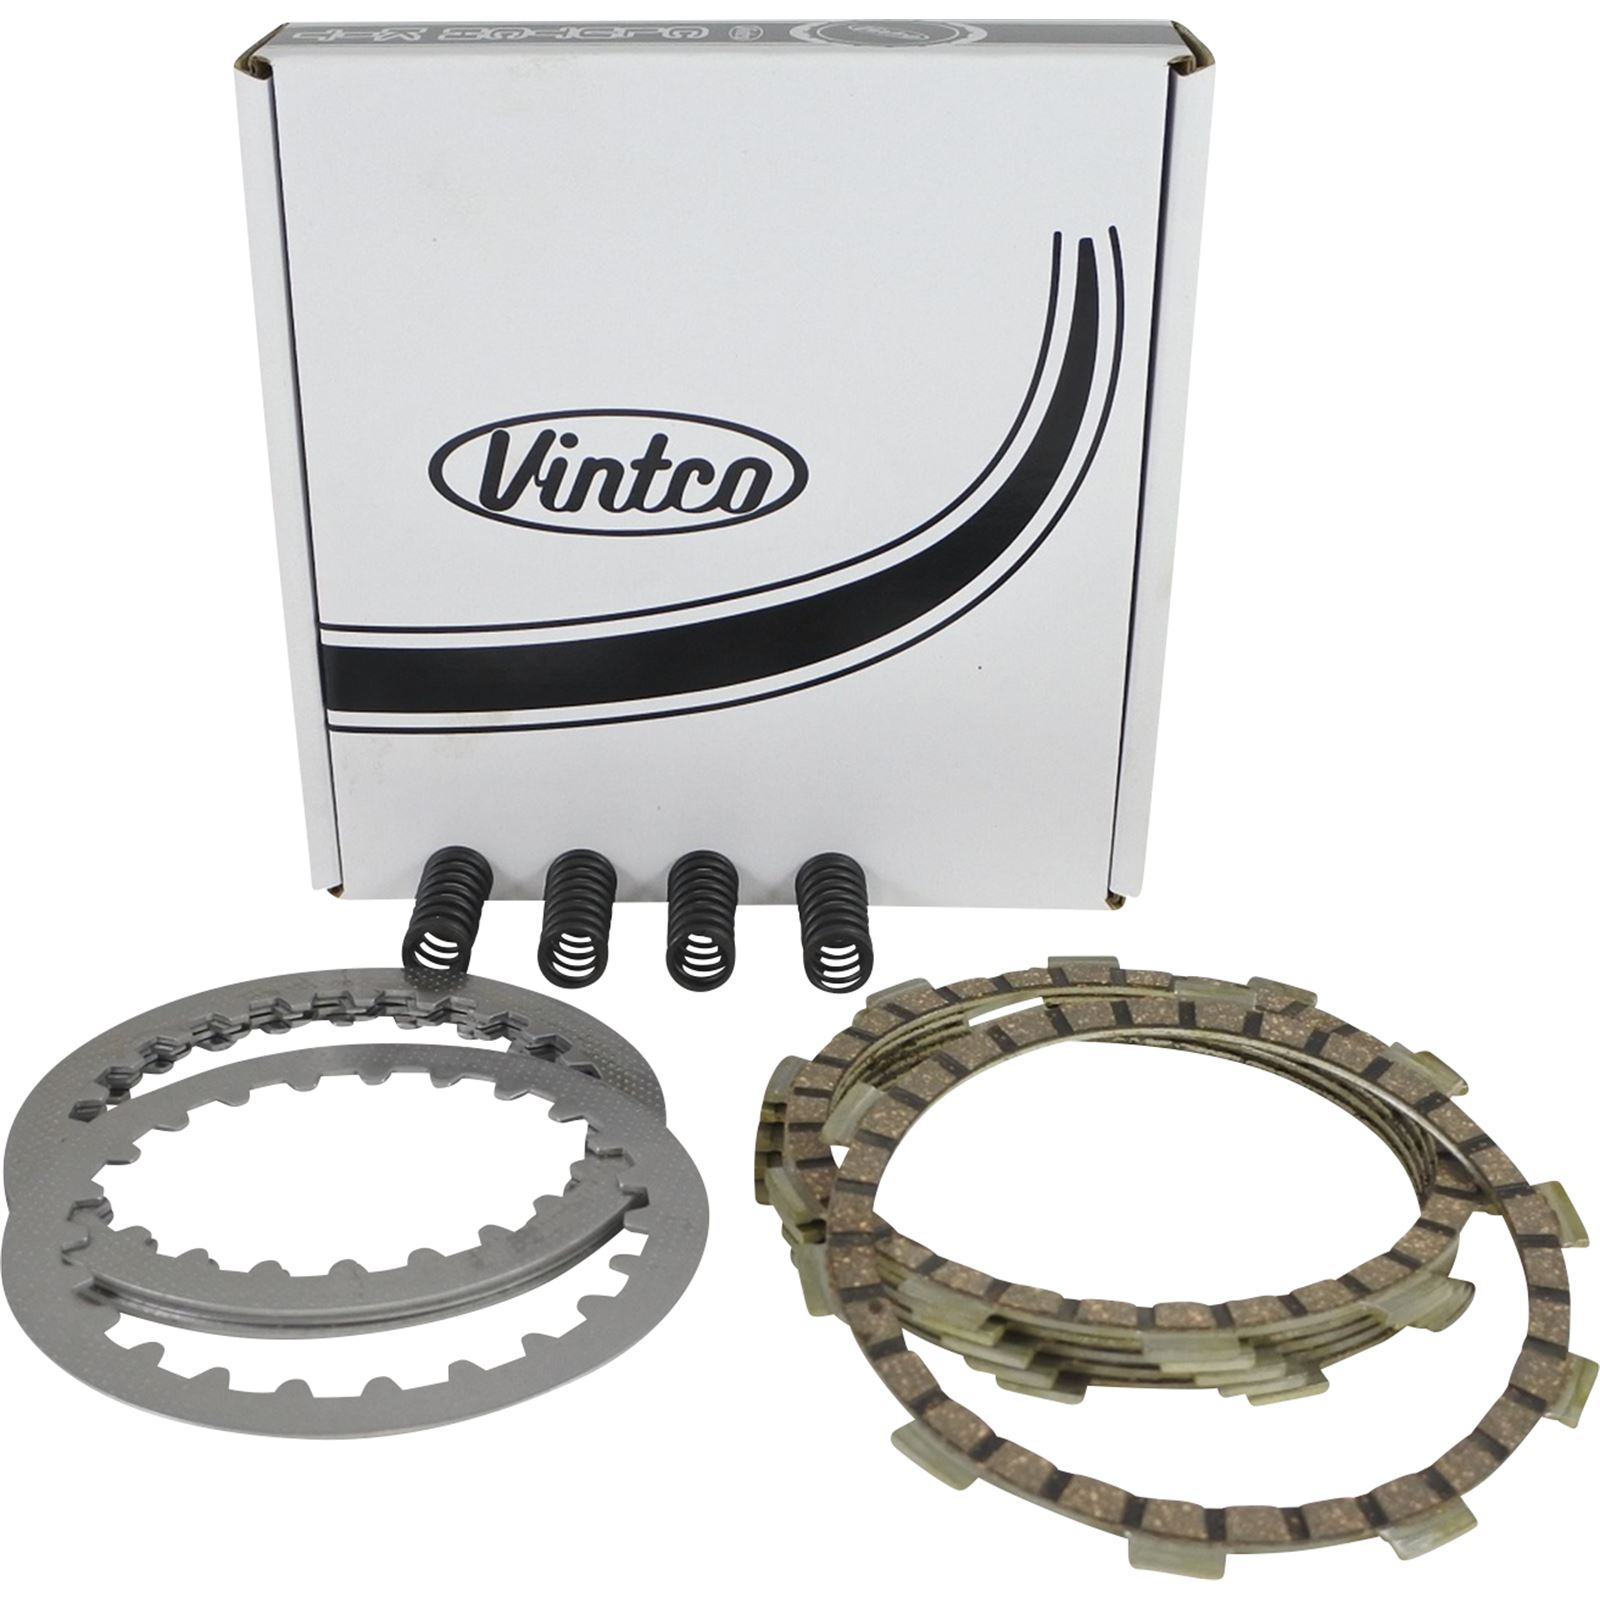 Vintco Clutch Plate Kit - Fits Yamaha YZ 80